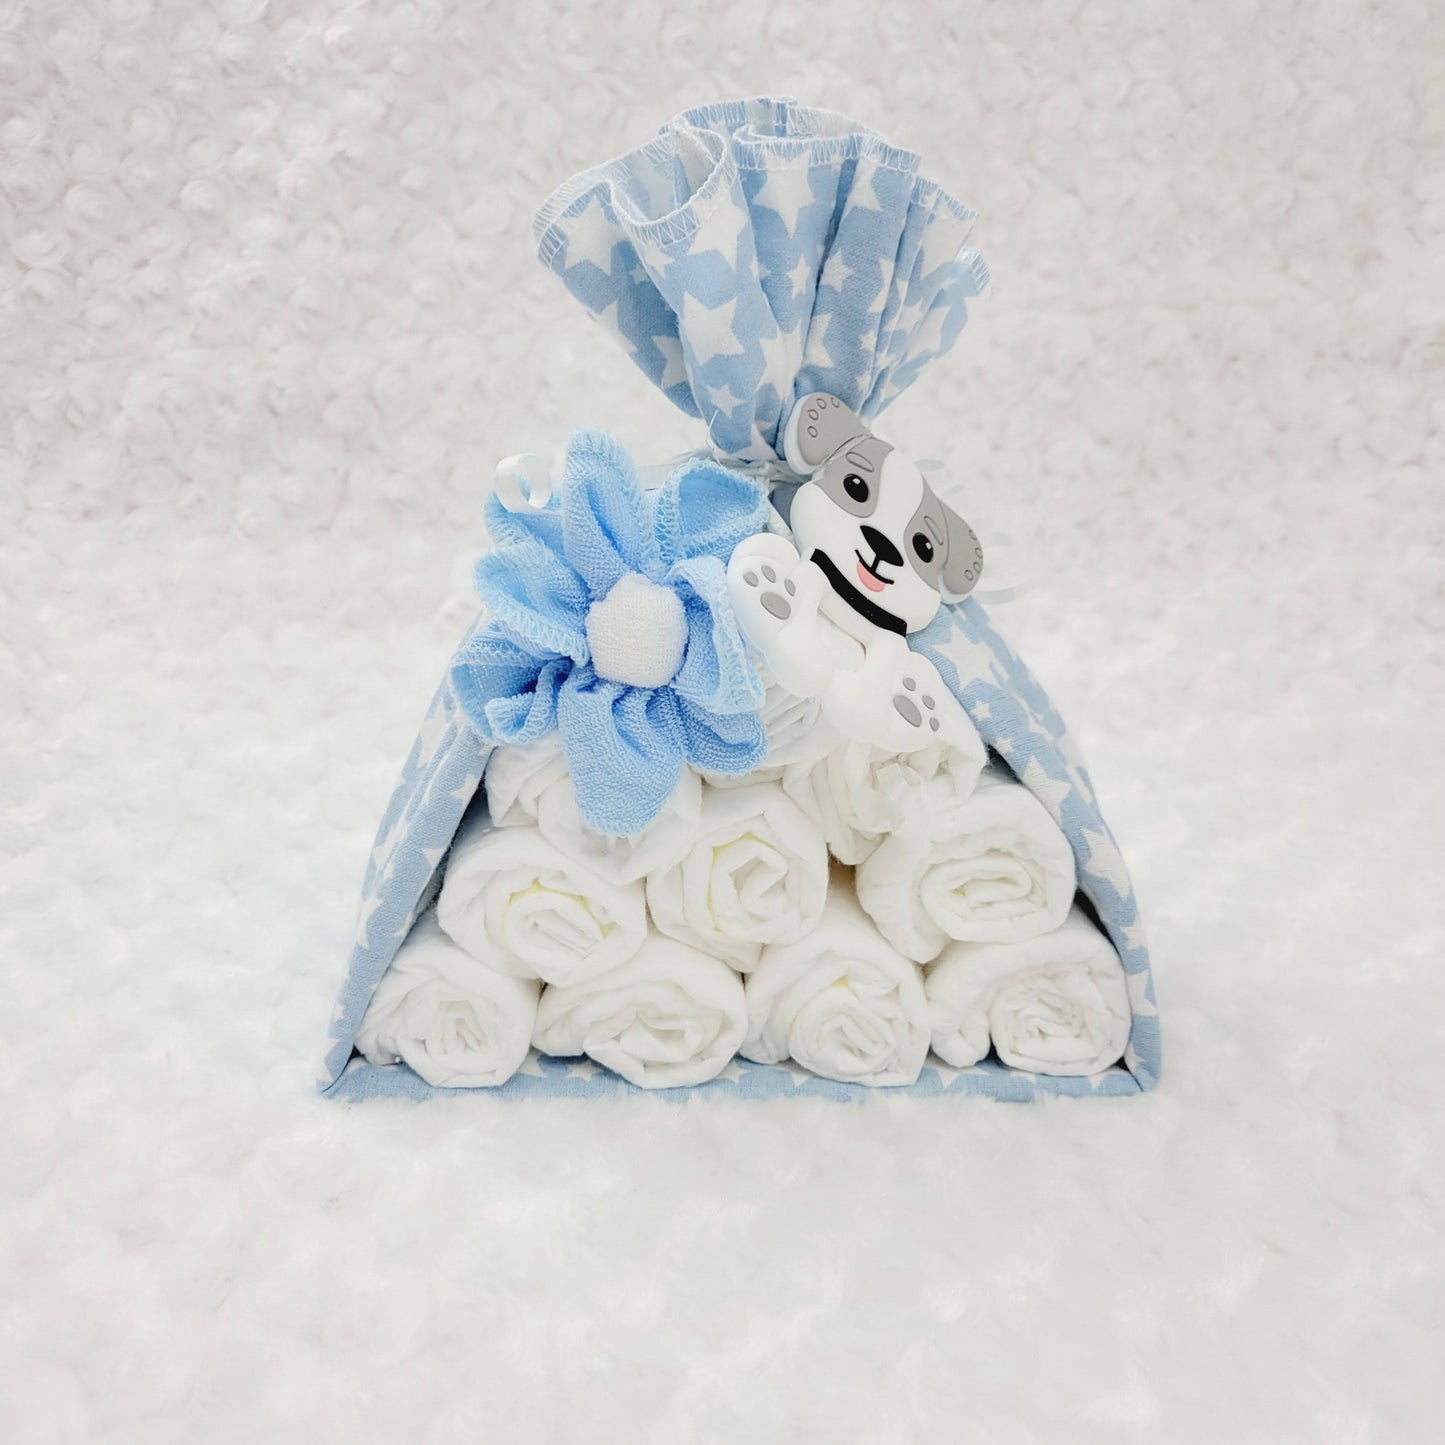 Baluchon avec une couverture bleu étoilé blanc avec 10 couches de taille #2 avec une fleur fait de débarbouillettes bleu et blanche. Complété avec un jouet de dentition en silicone en forme de chien de couleur blanc et gris.